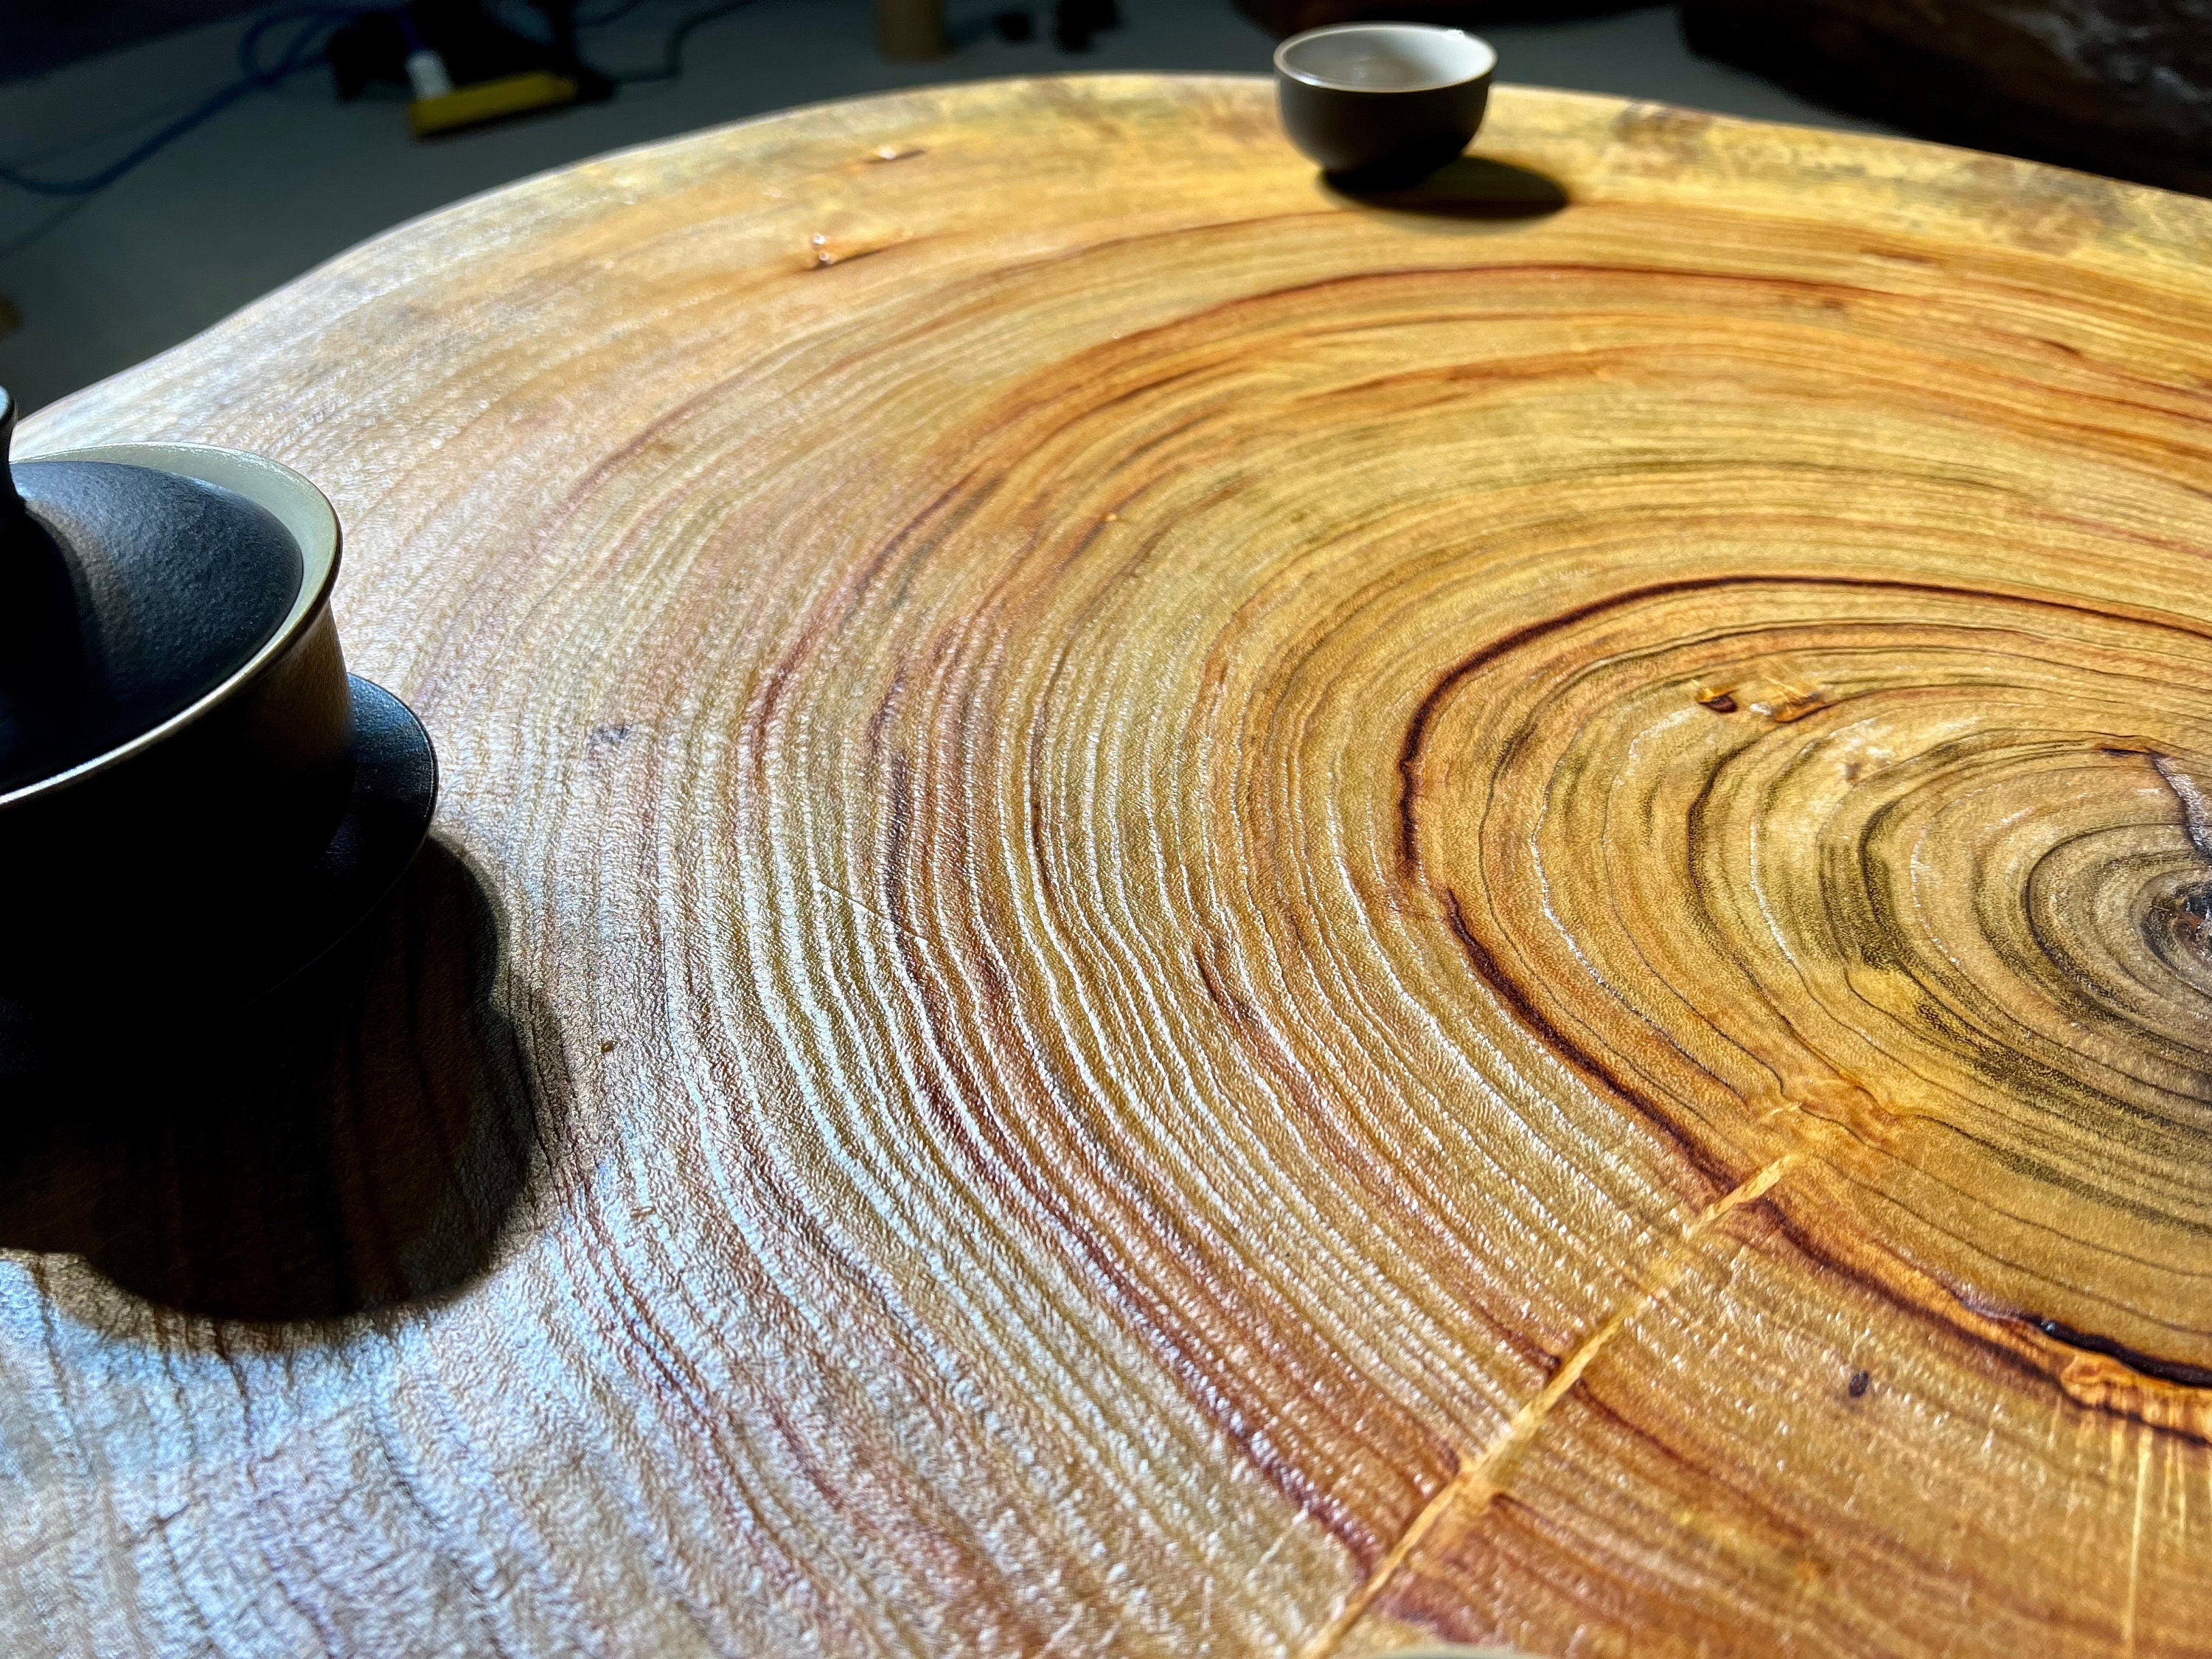 طاولة القهوة الخشبية ذات الحافة الحية، وطاولة خشب الزيتون، وطاولة القهوة الخشبية عالية الجودة